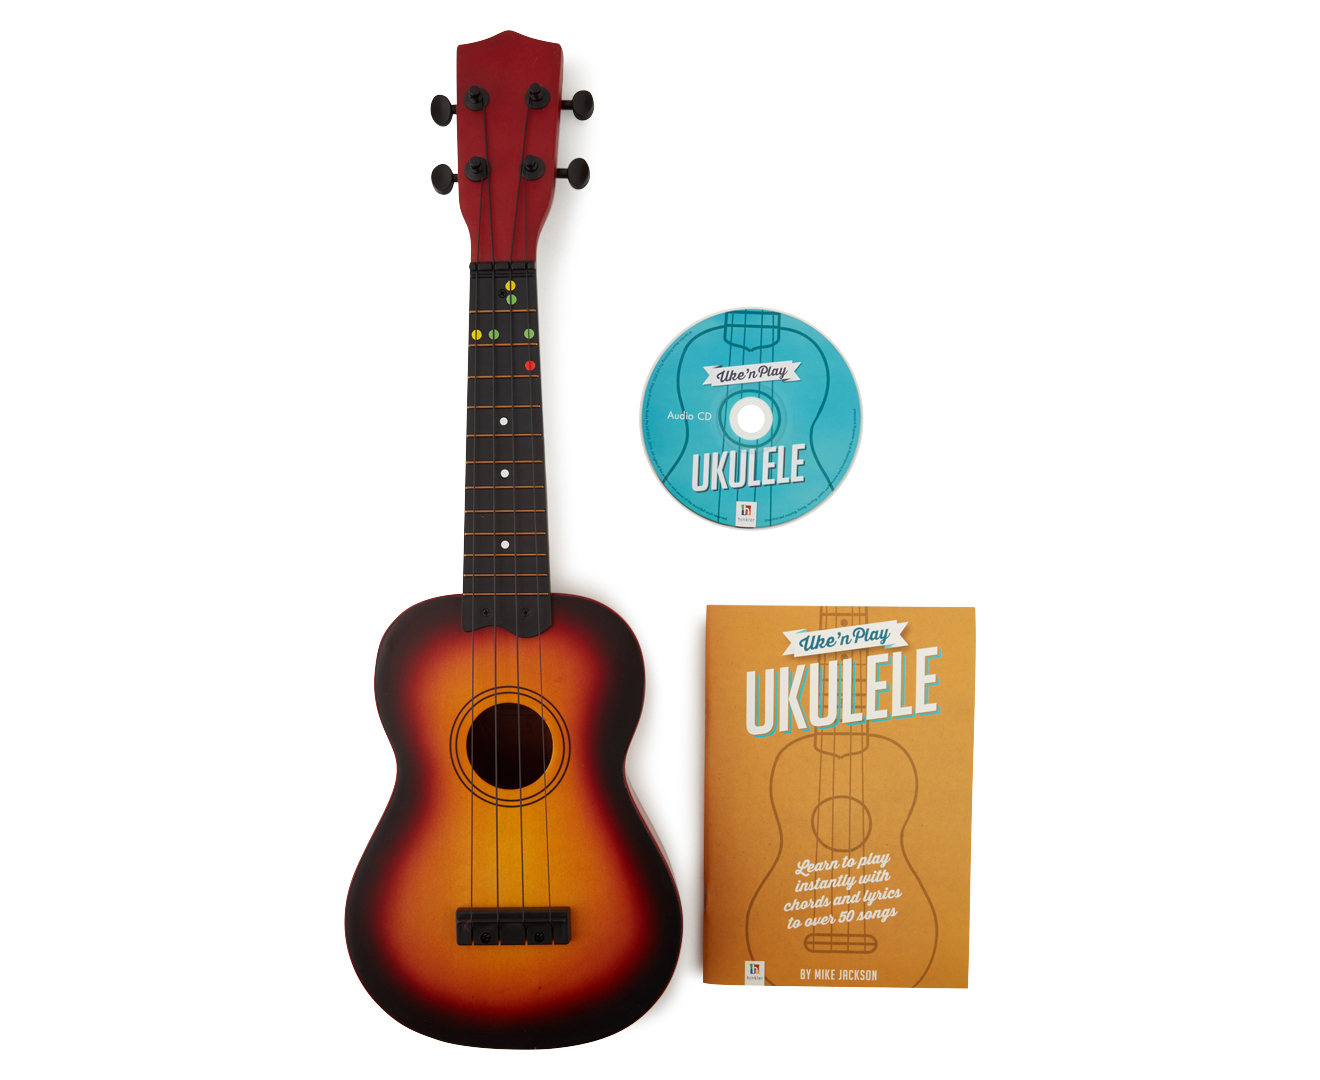 Uke 'n Play Ukulele – Kingdom Music